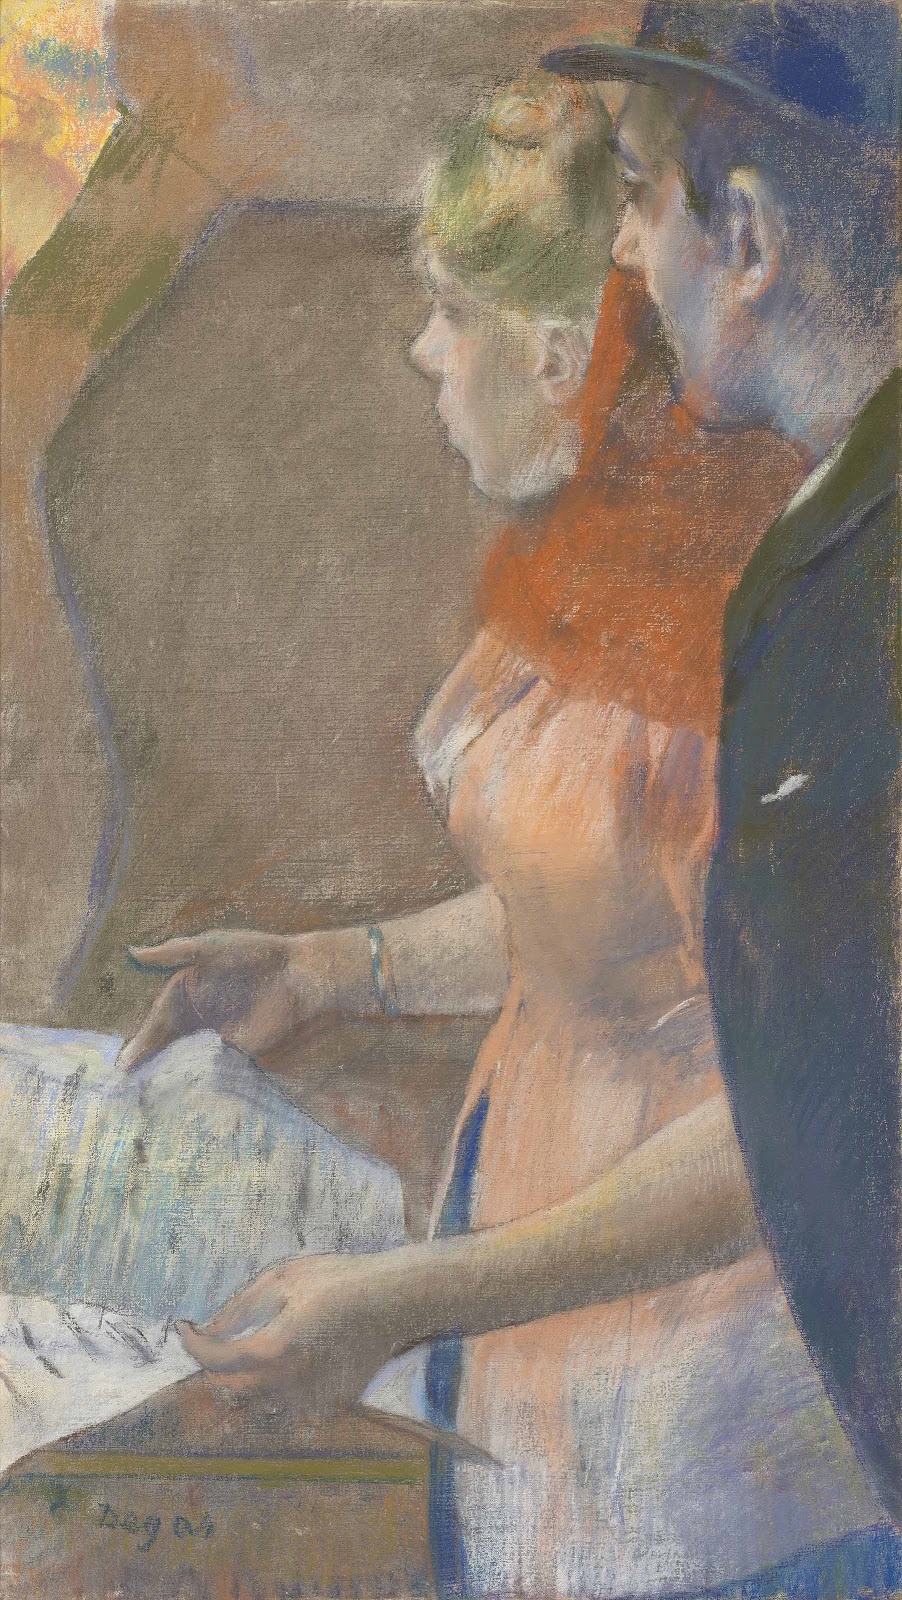 Edgar+Degas-1834-1917 (841).jpg